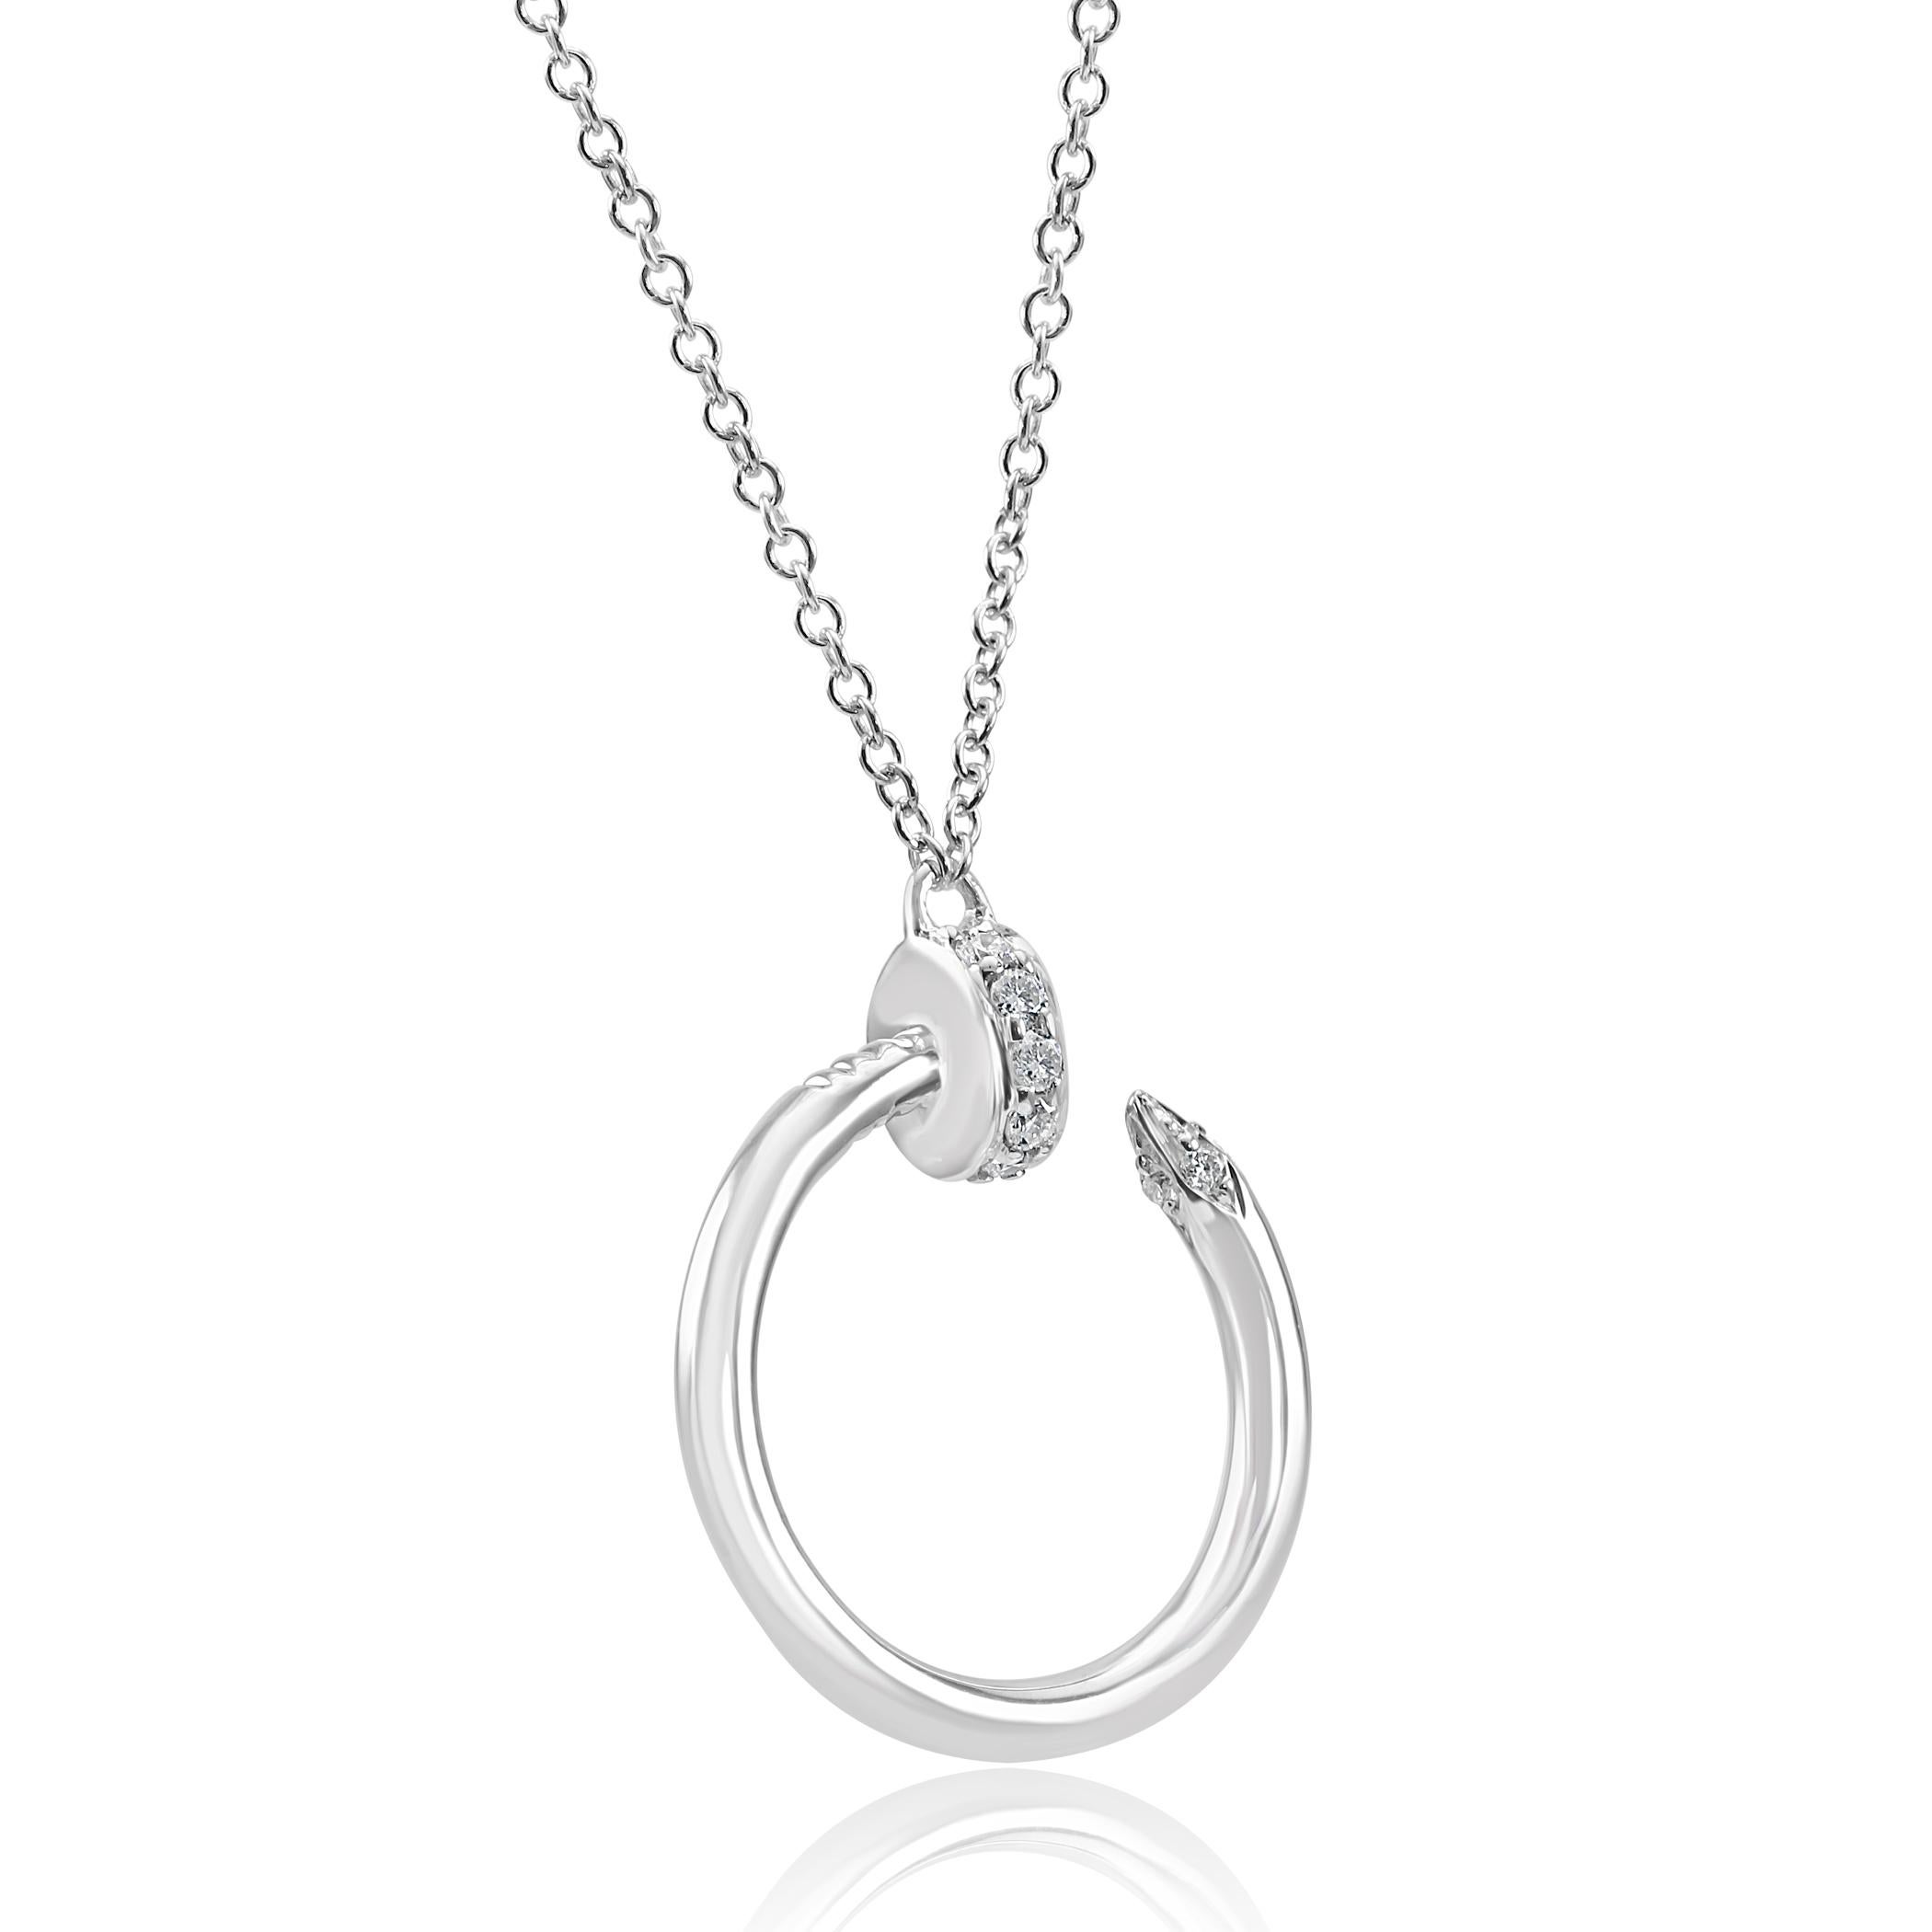 Contemporary White Diamond Round Drop Fashion Nail Pendant 14 Karat White Gold Chain Necklace